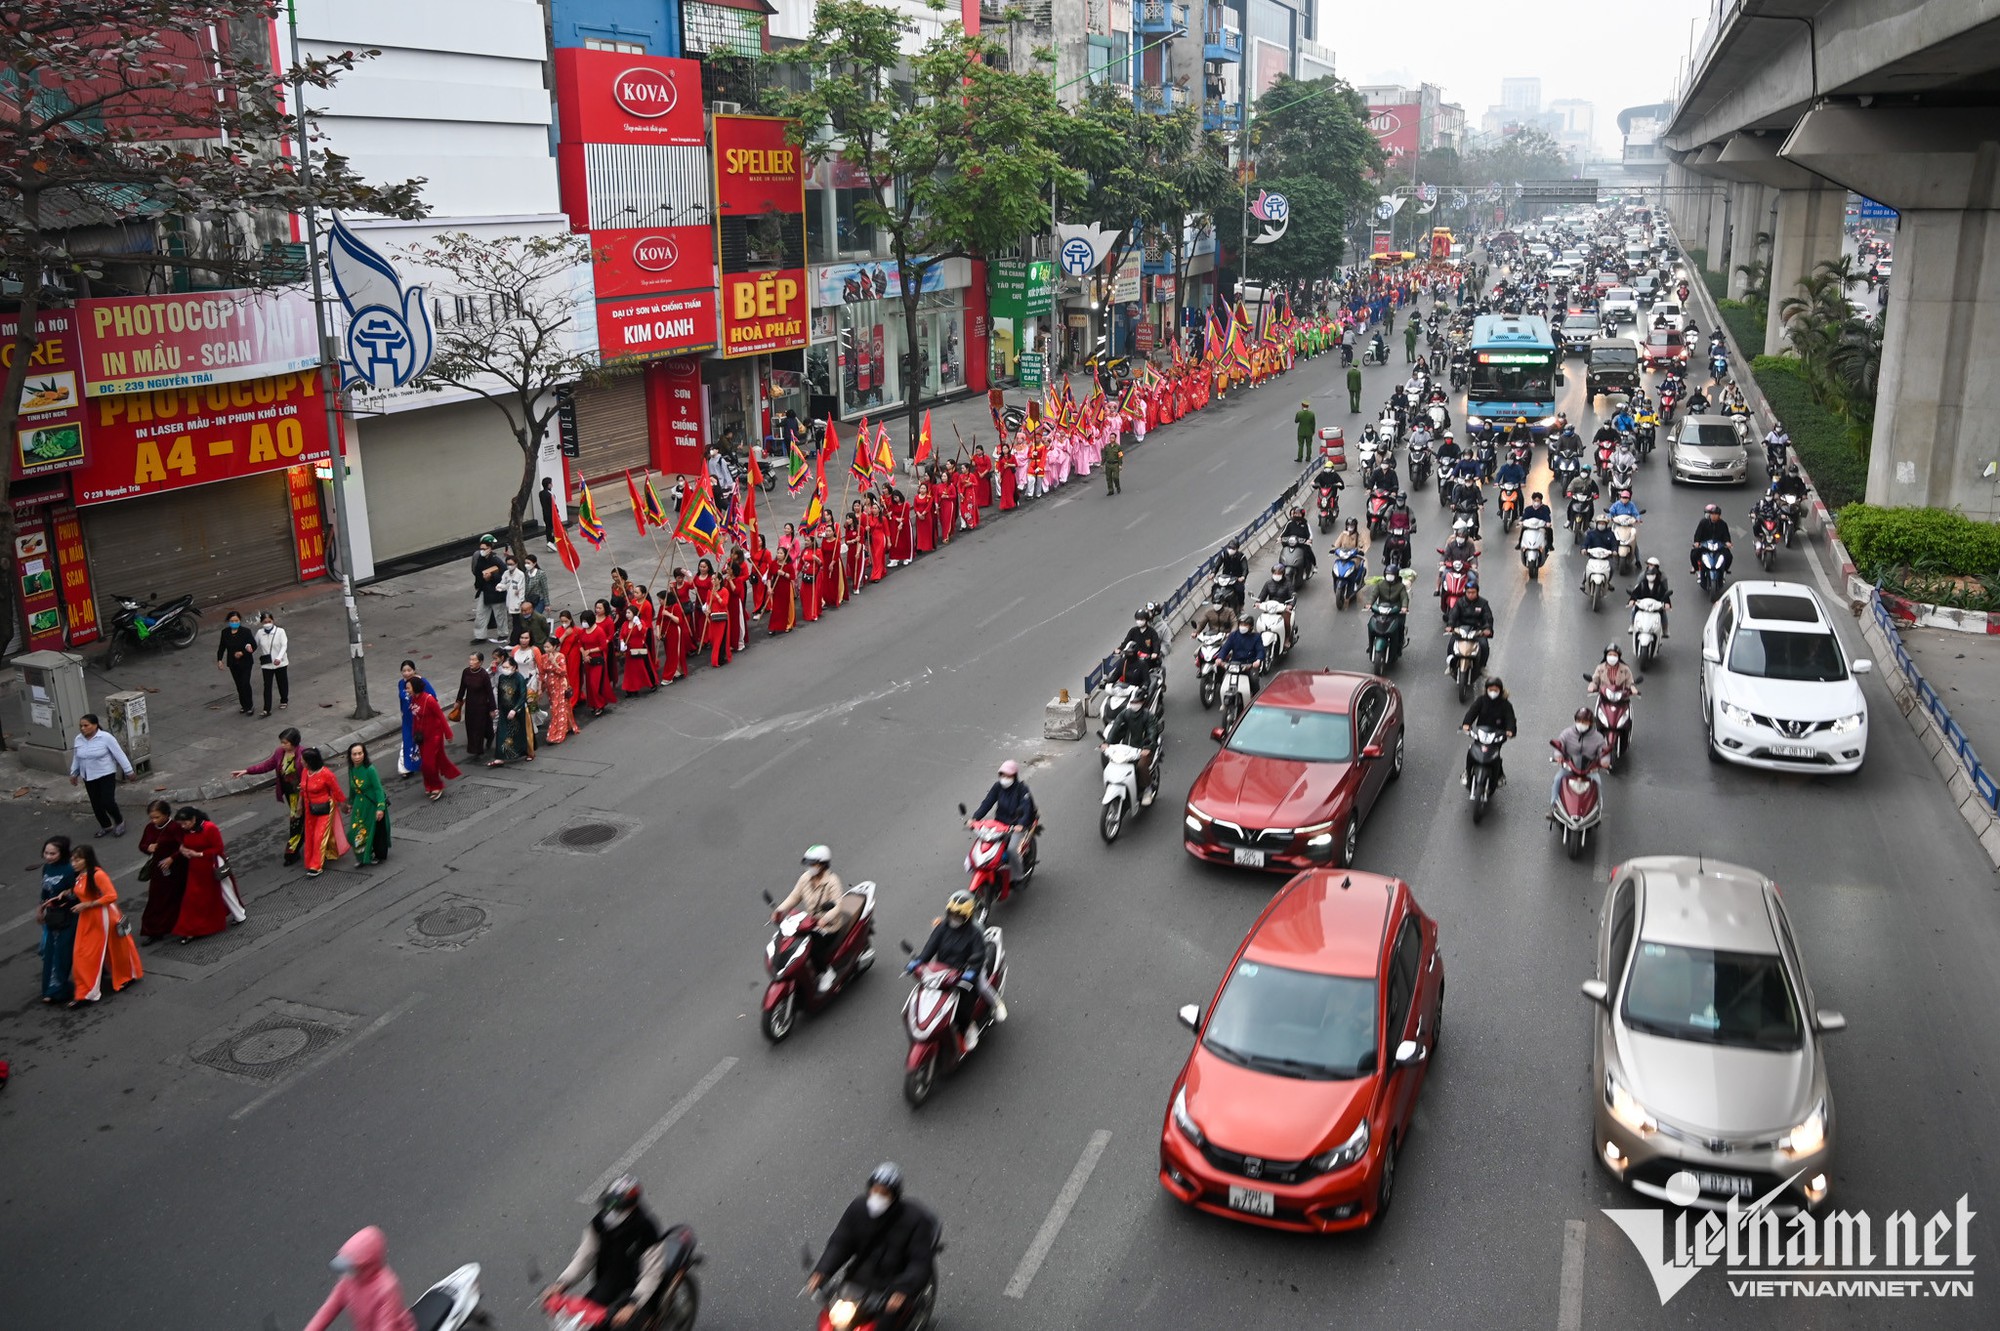 Kỳ lạ màn rước kiệu như chạy marathon trên đường phố Hà Nội - Ảnh 5.